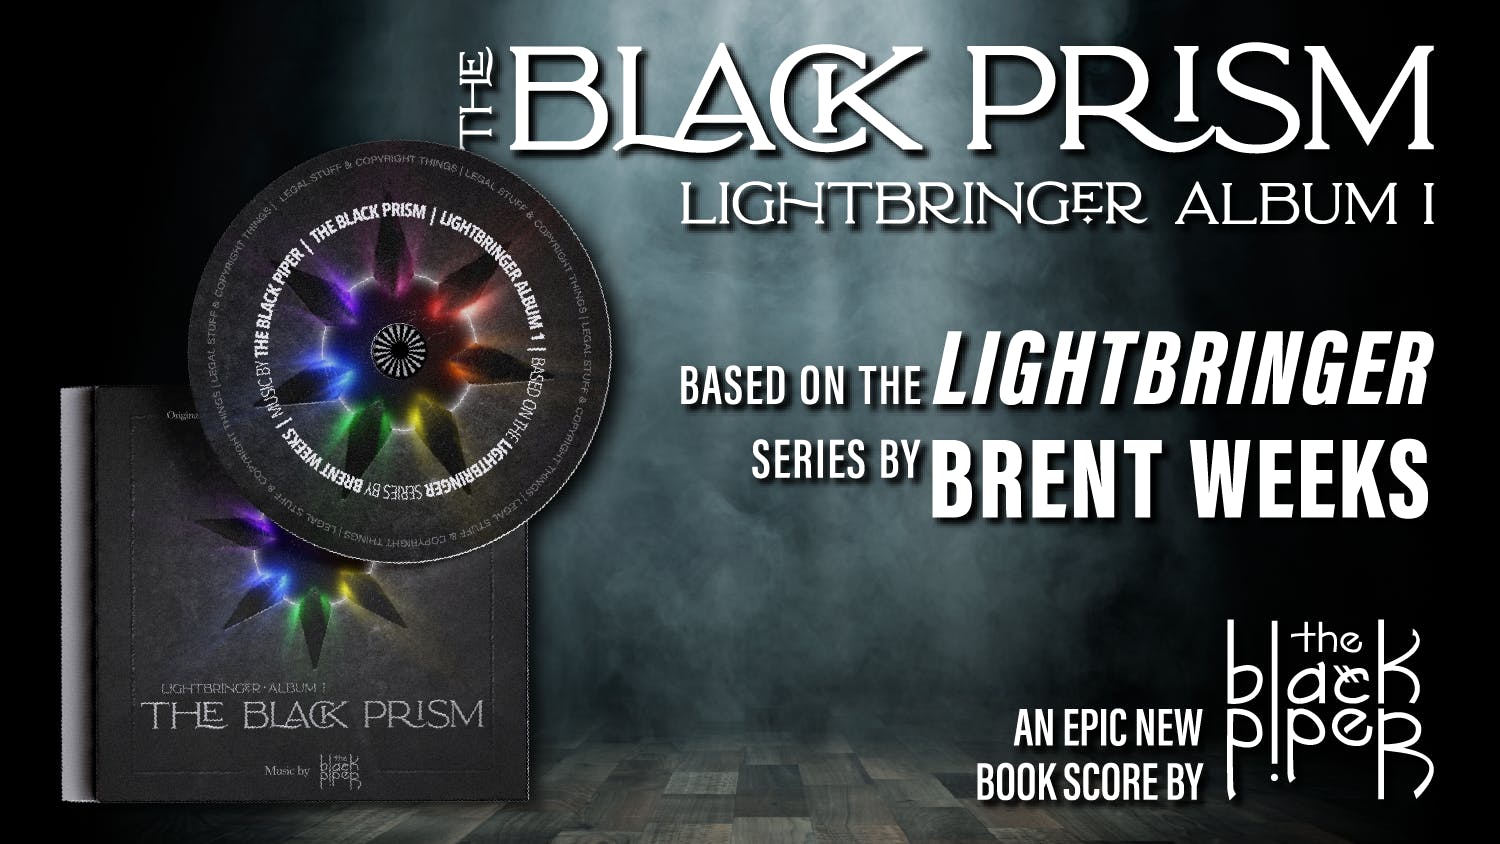 The Black Prism: Lightbringer Album